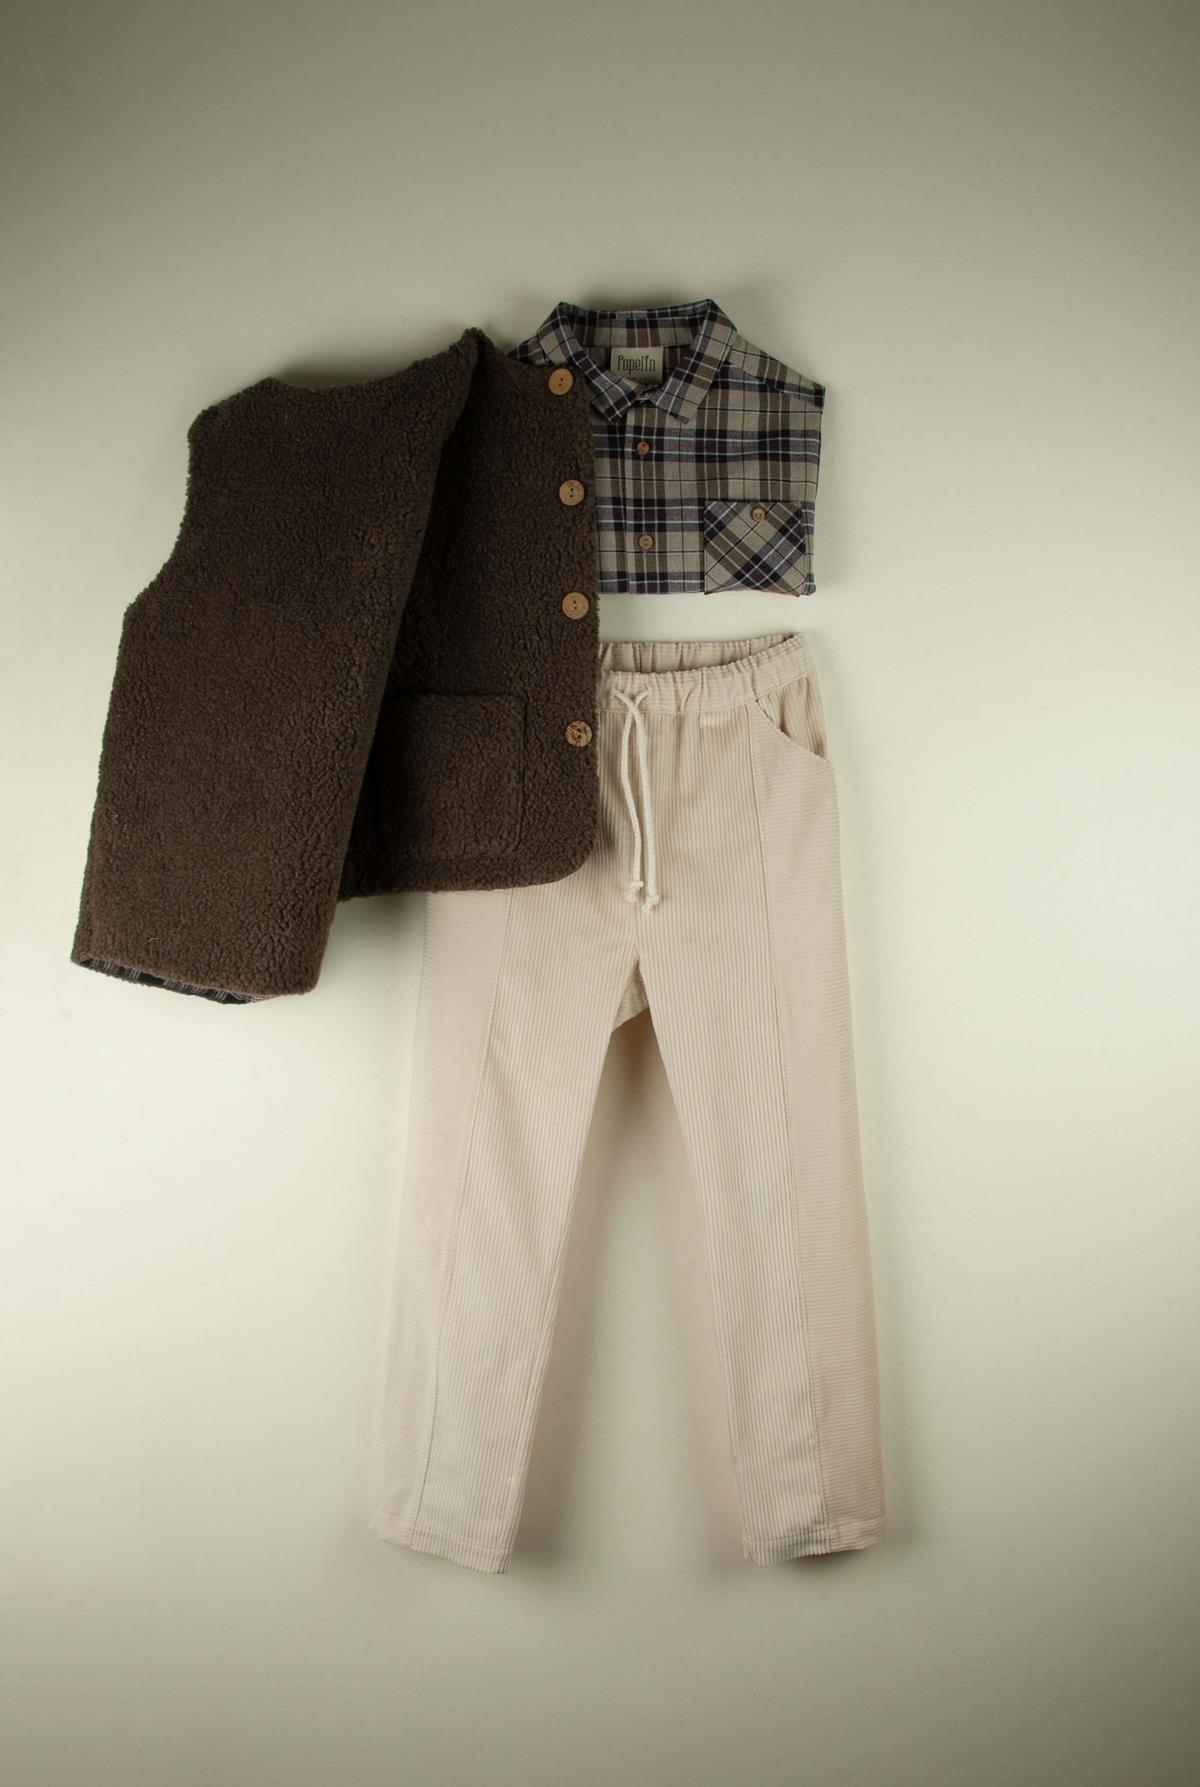 Mod.21.1 Off-white trousers | AW21.22 Mod.21.1 Off-white trousers | 1